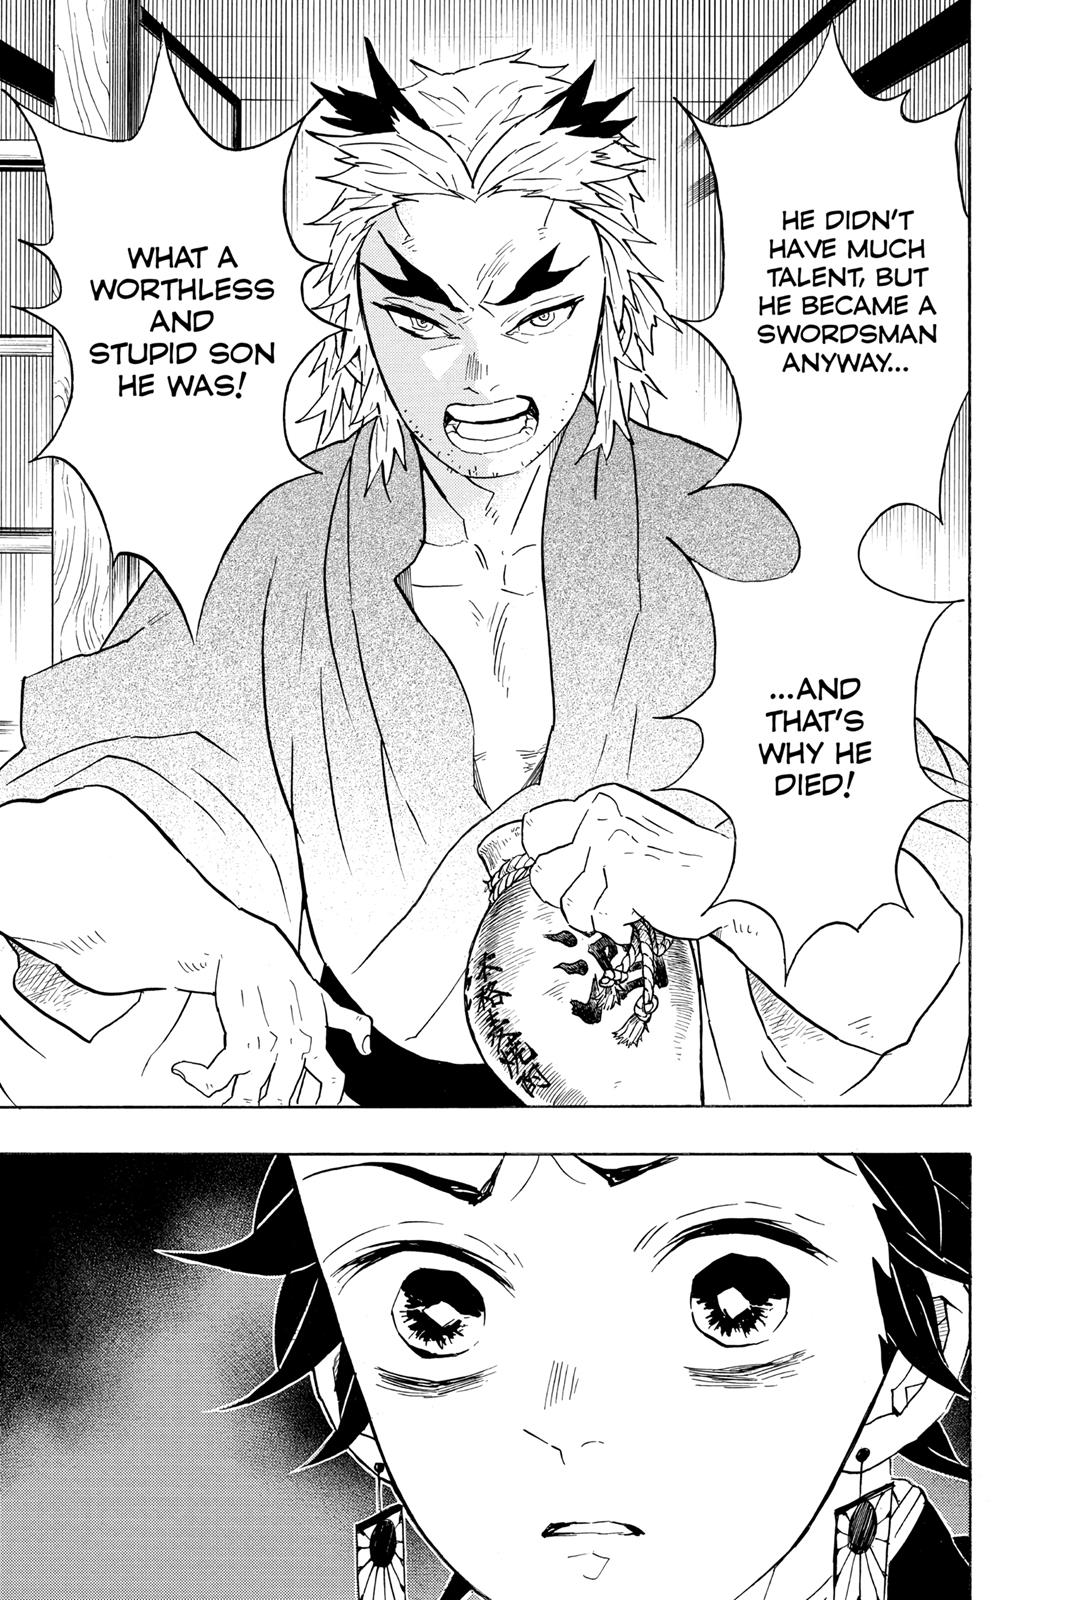 Demon Slayer Manga Manga Chapter - 67 - image 19